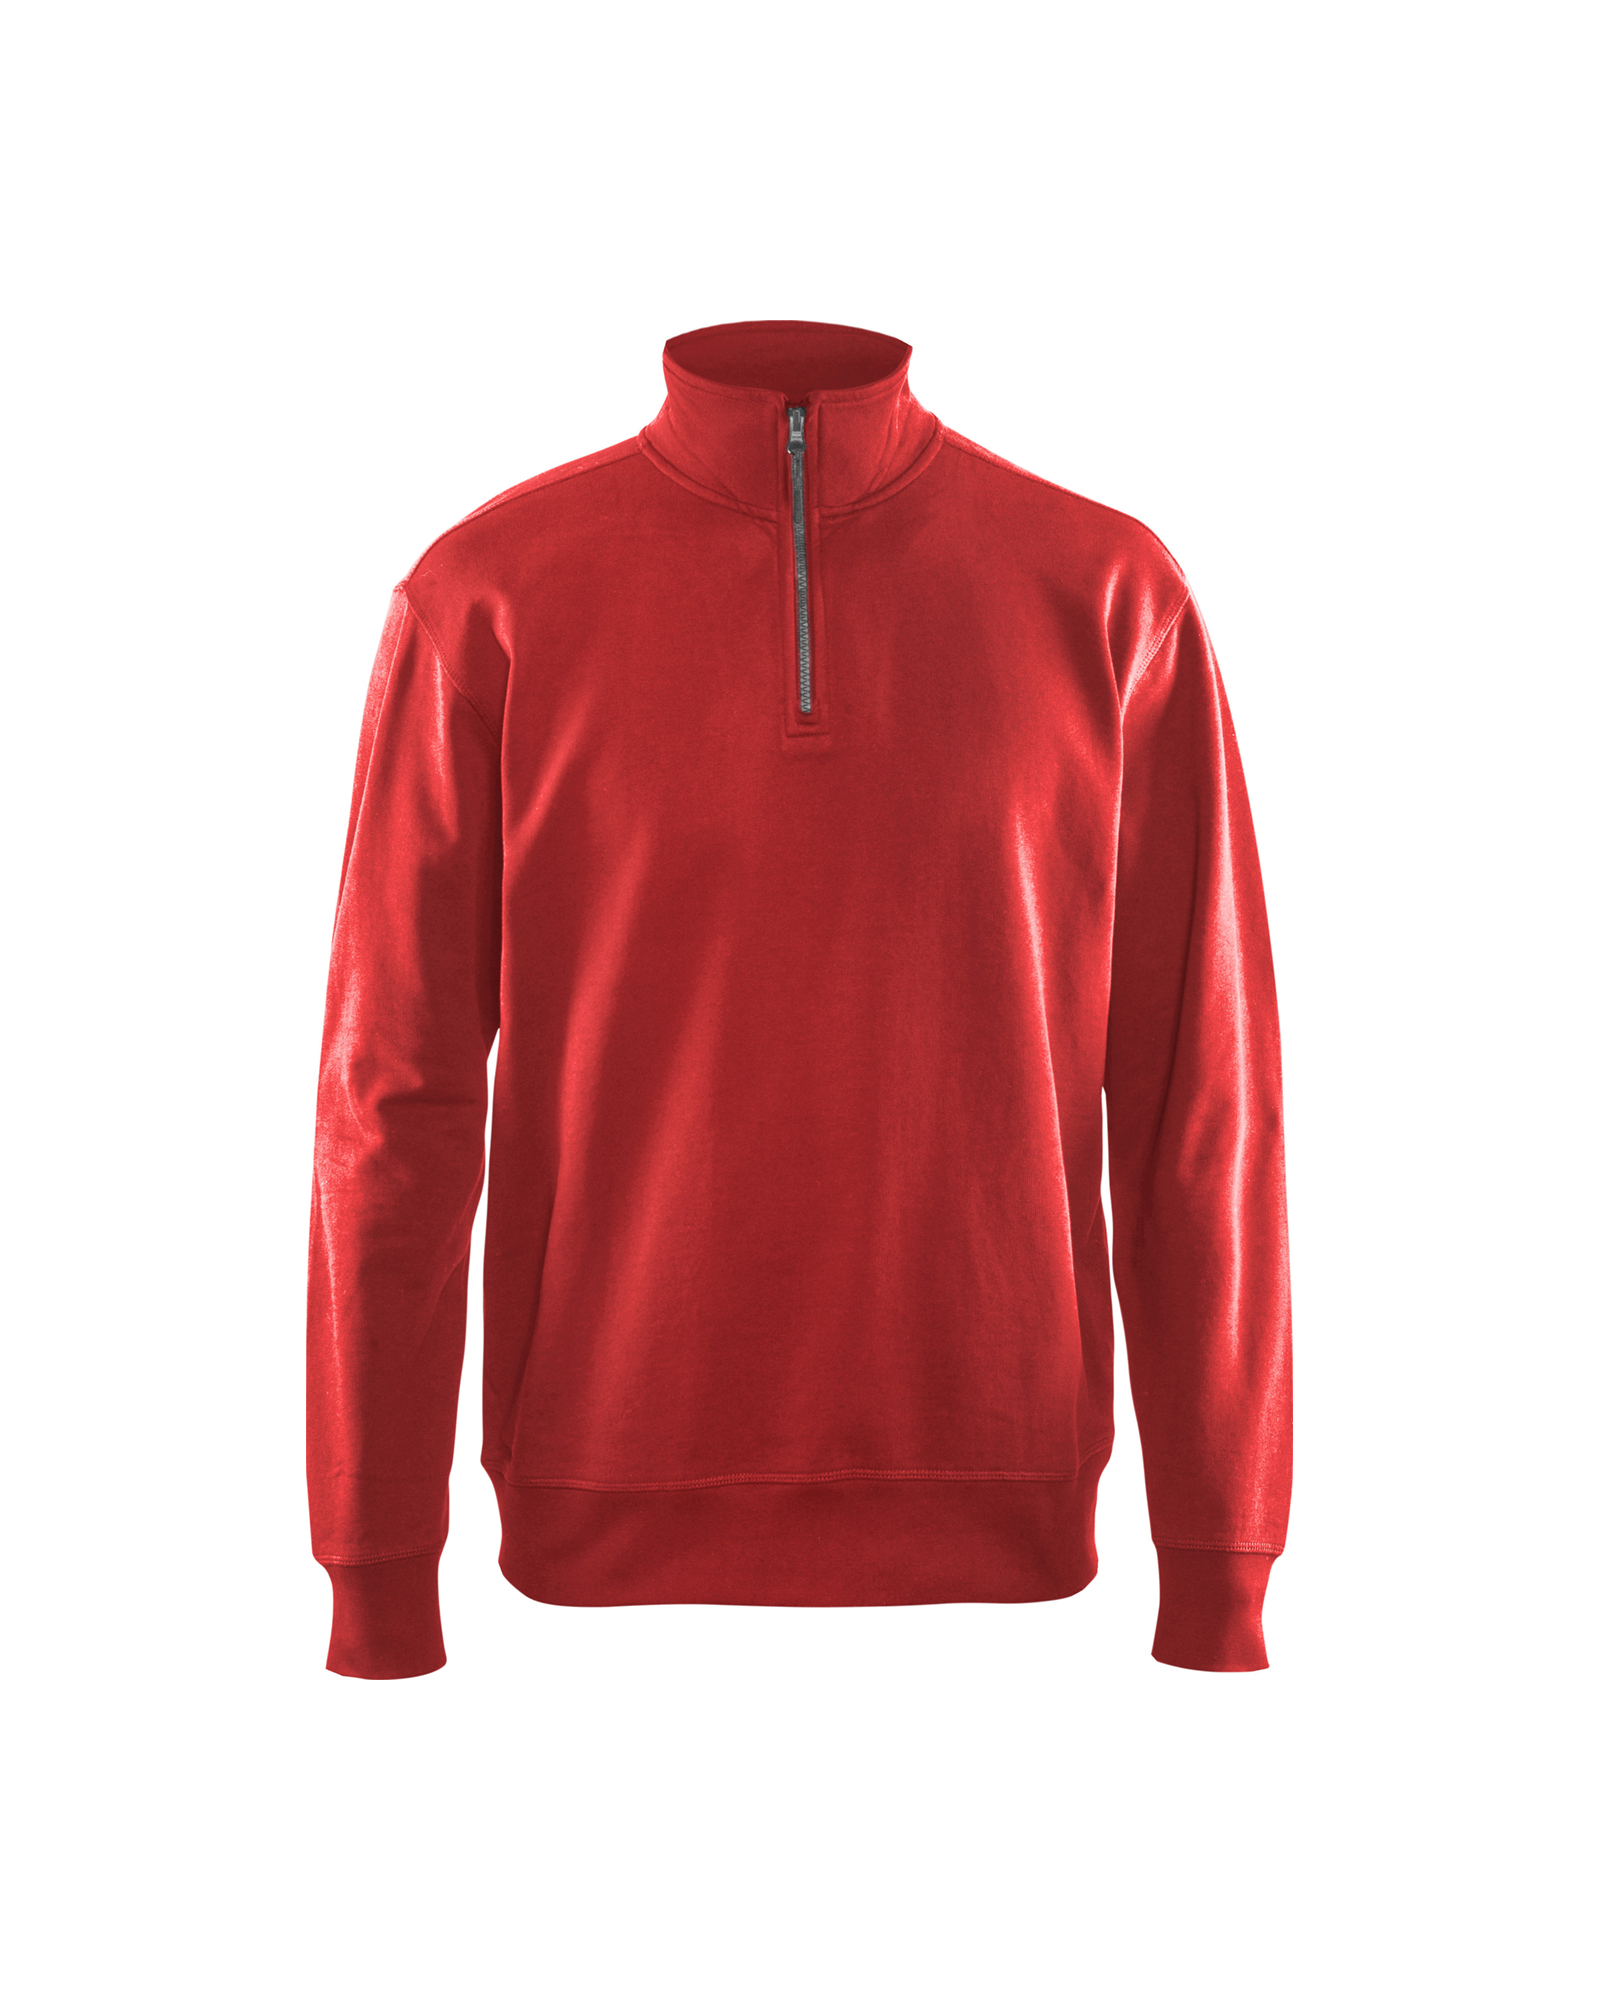 Sweatshirt with half zip (33691158) - Blaklader